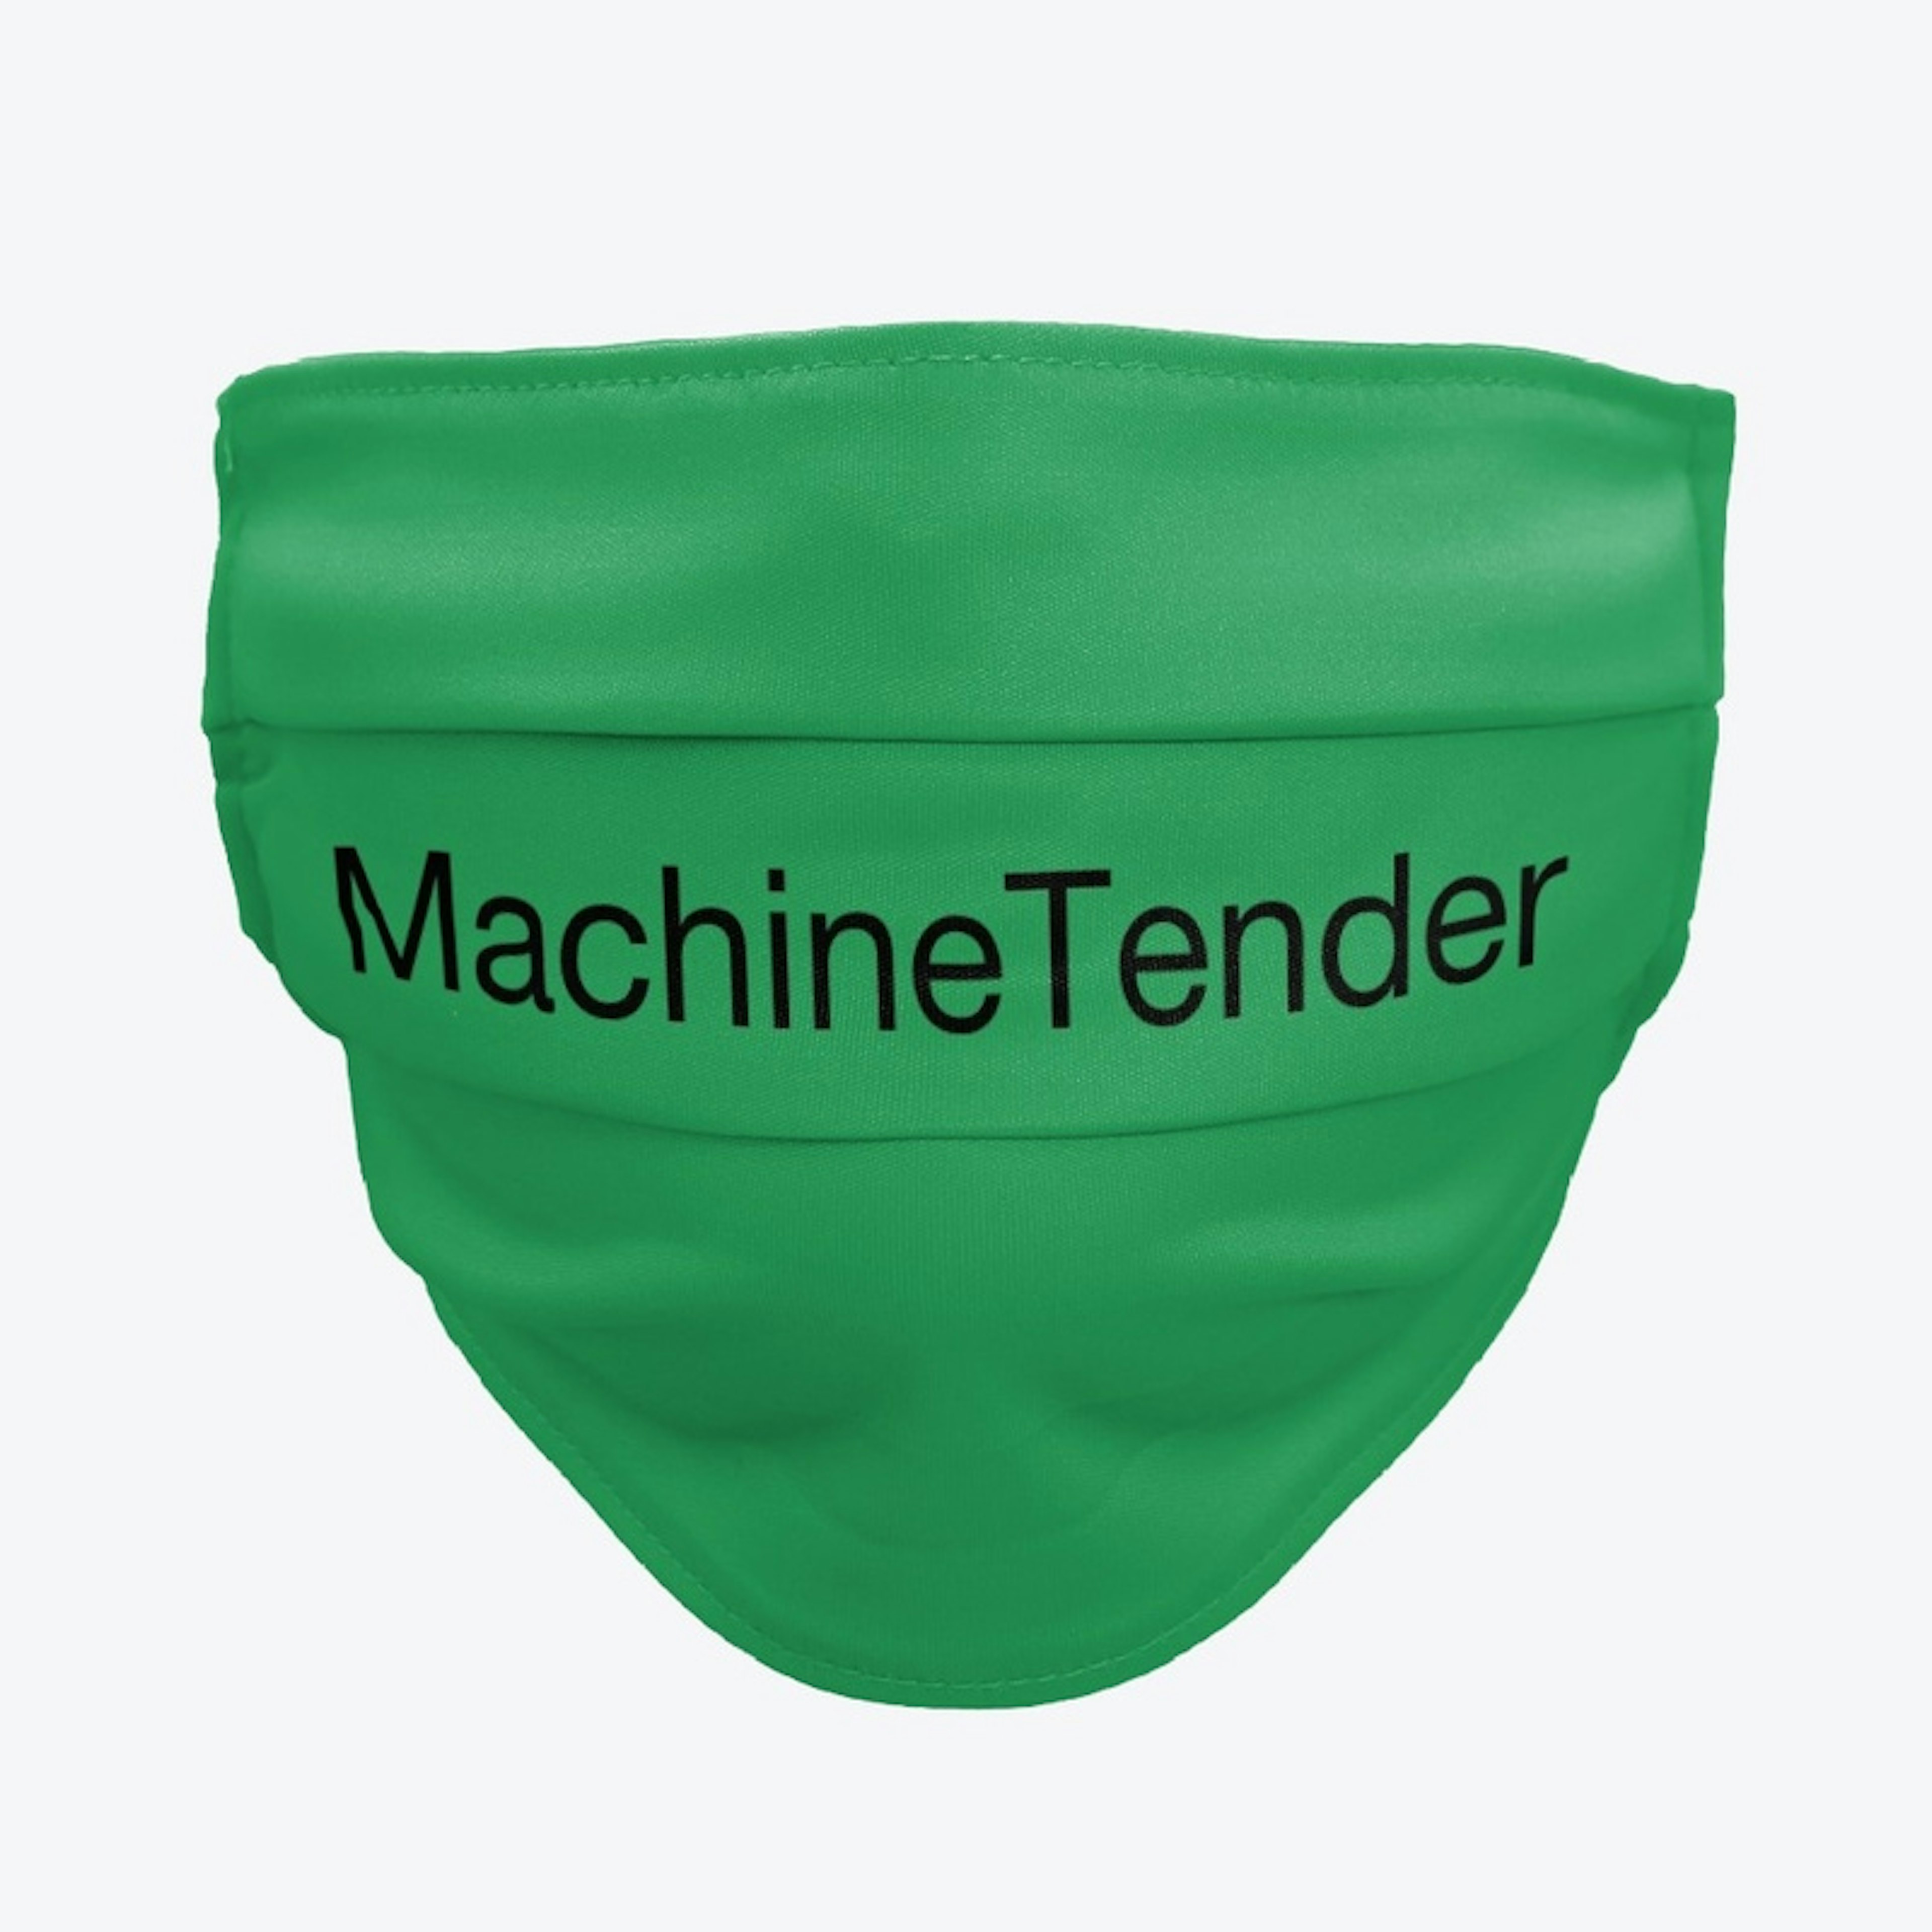 Machinetender